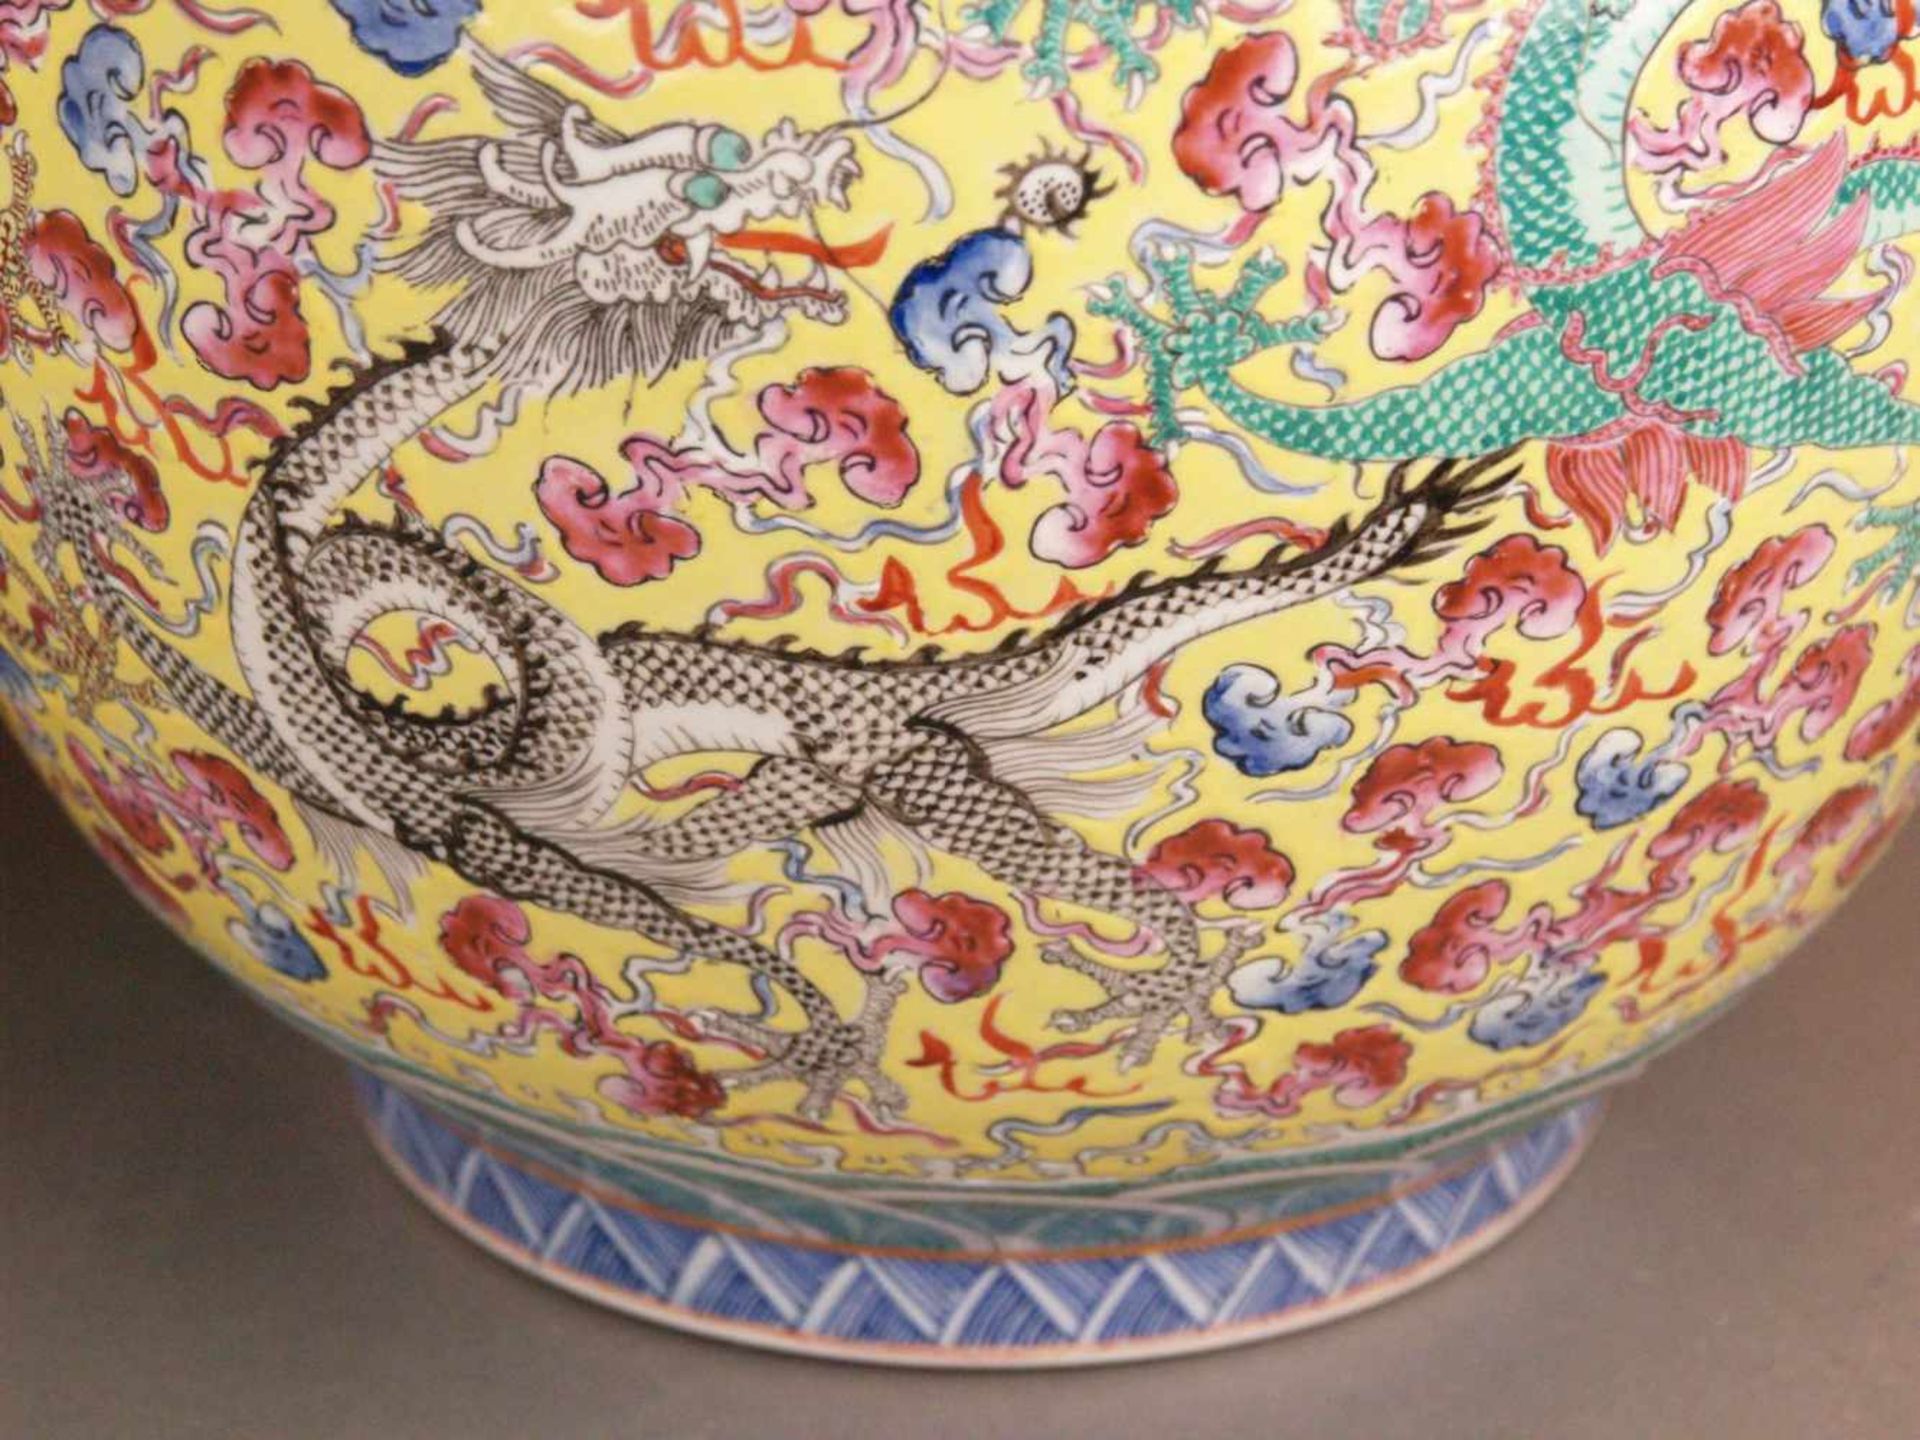 Paar Bodenvasen - China 20.Jh.,Tian qiu ping-Typus, üppiger Dekor in polychromen Emailfarben, auf - Bild 13 aus 15